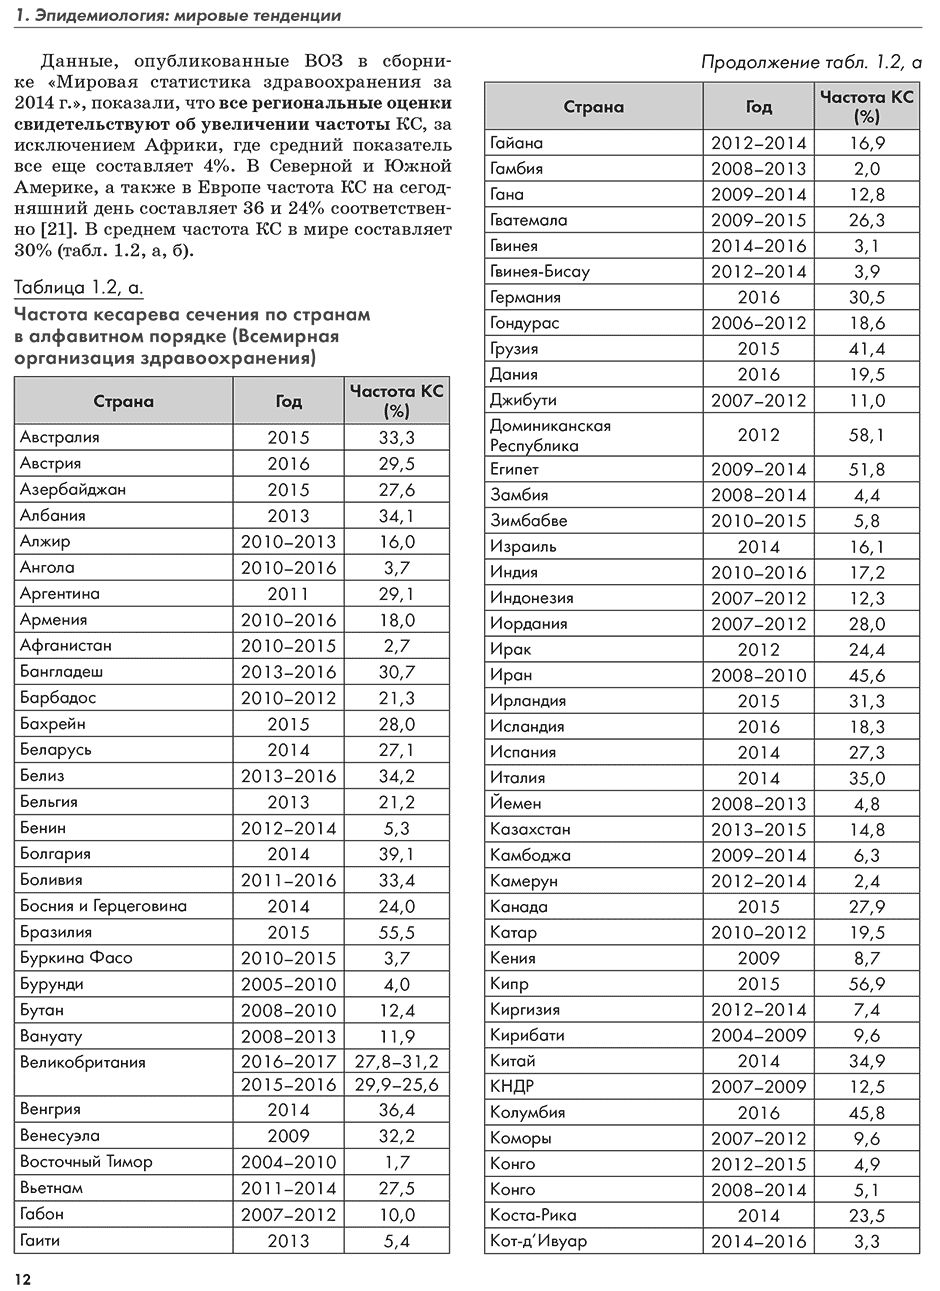 Частота кесарева сечения по странам в алфавитном порядке (Всемирная организация здравоохранения)